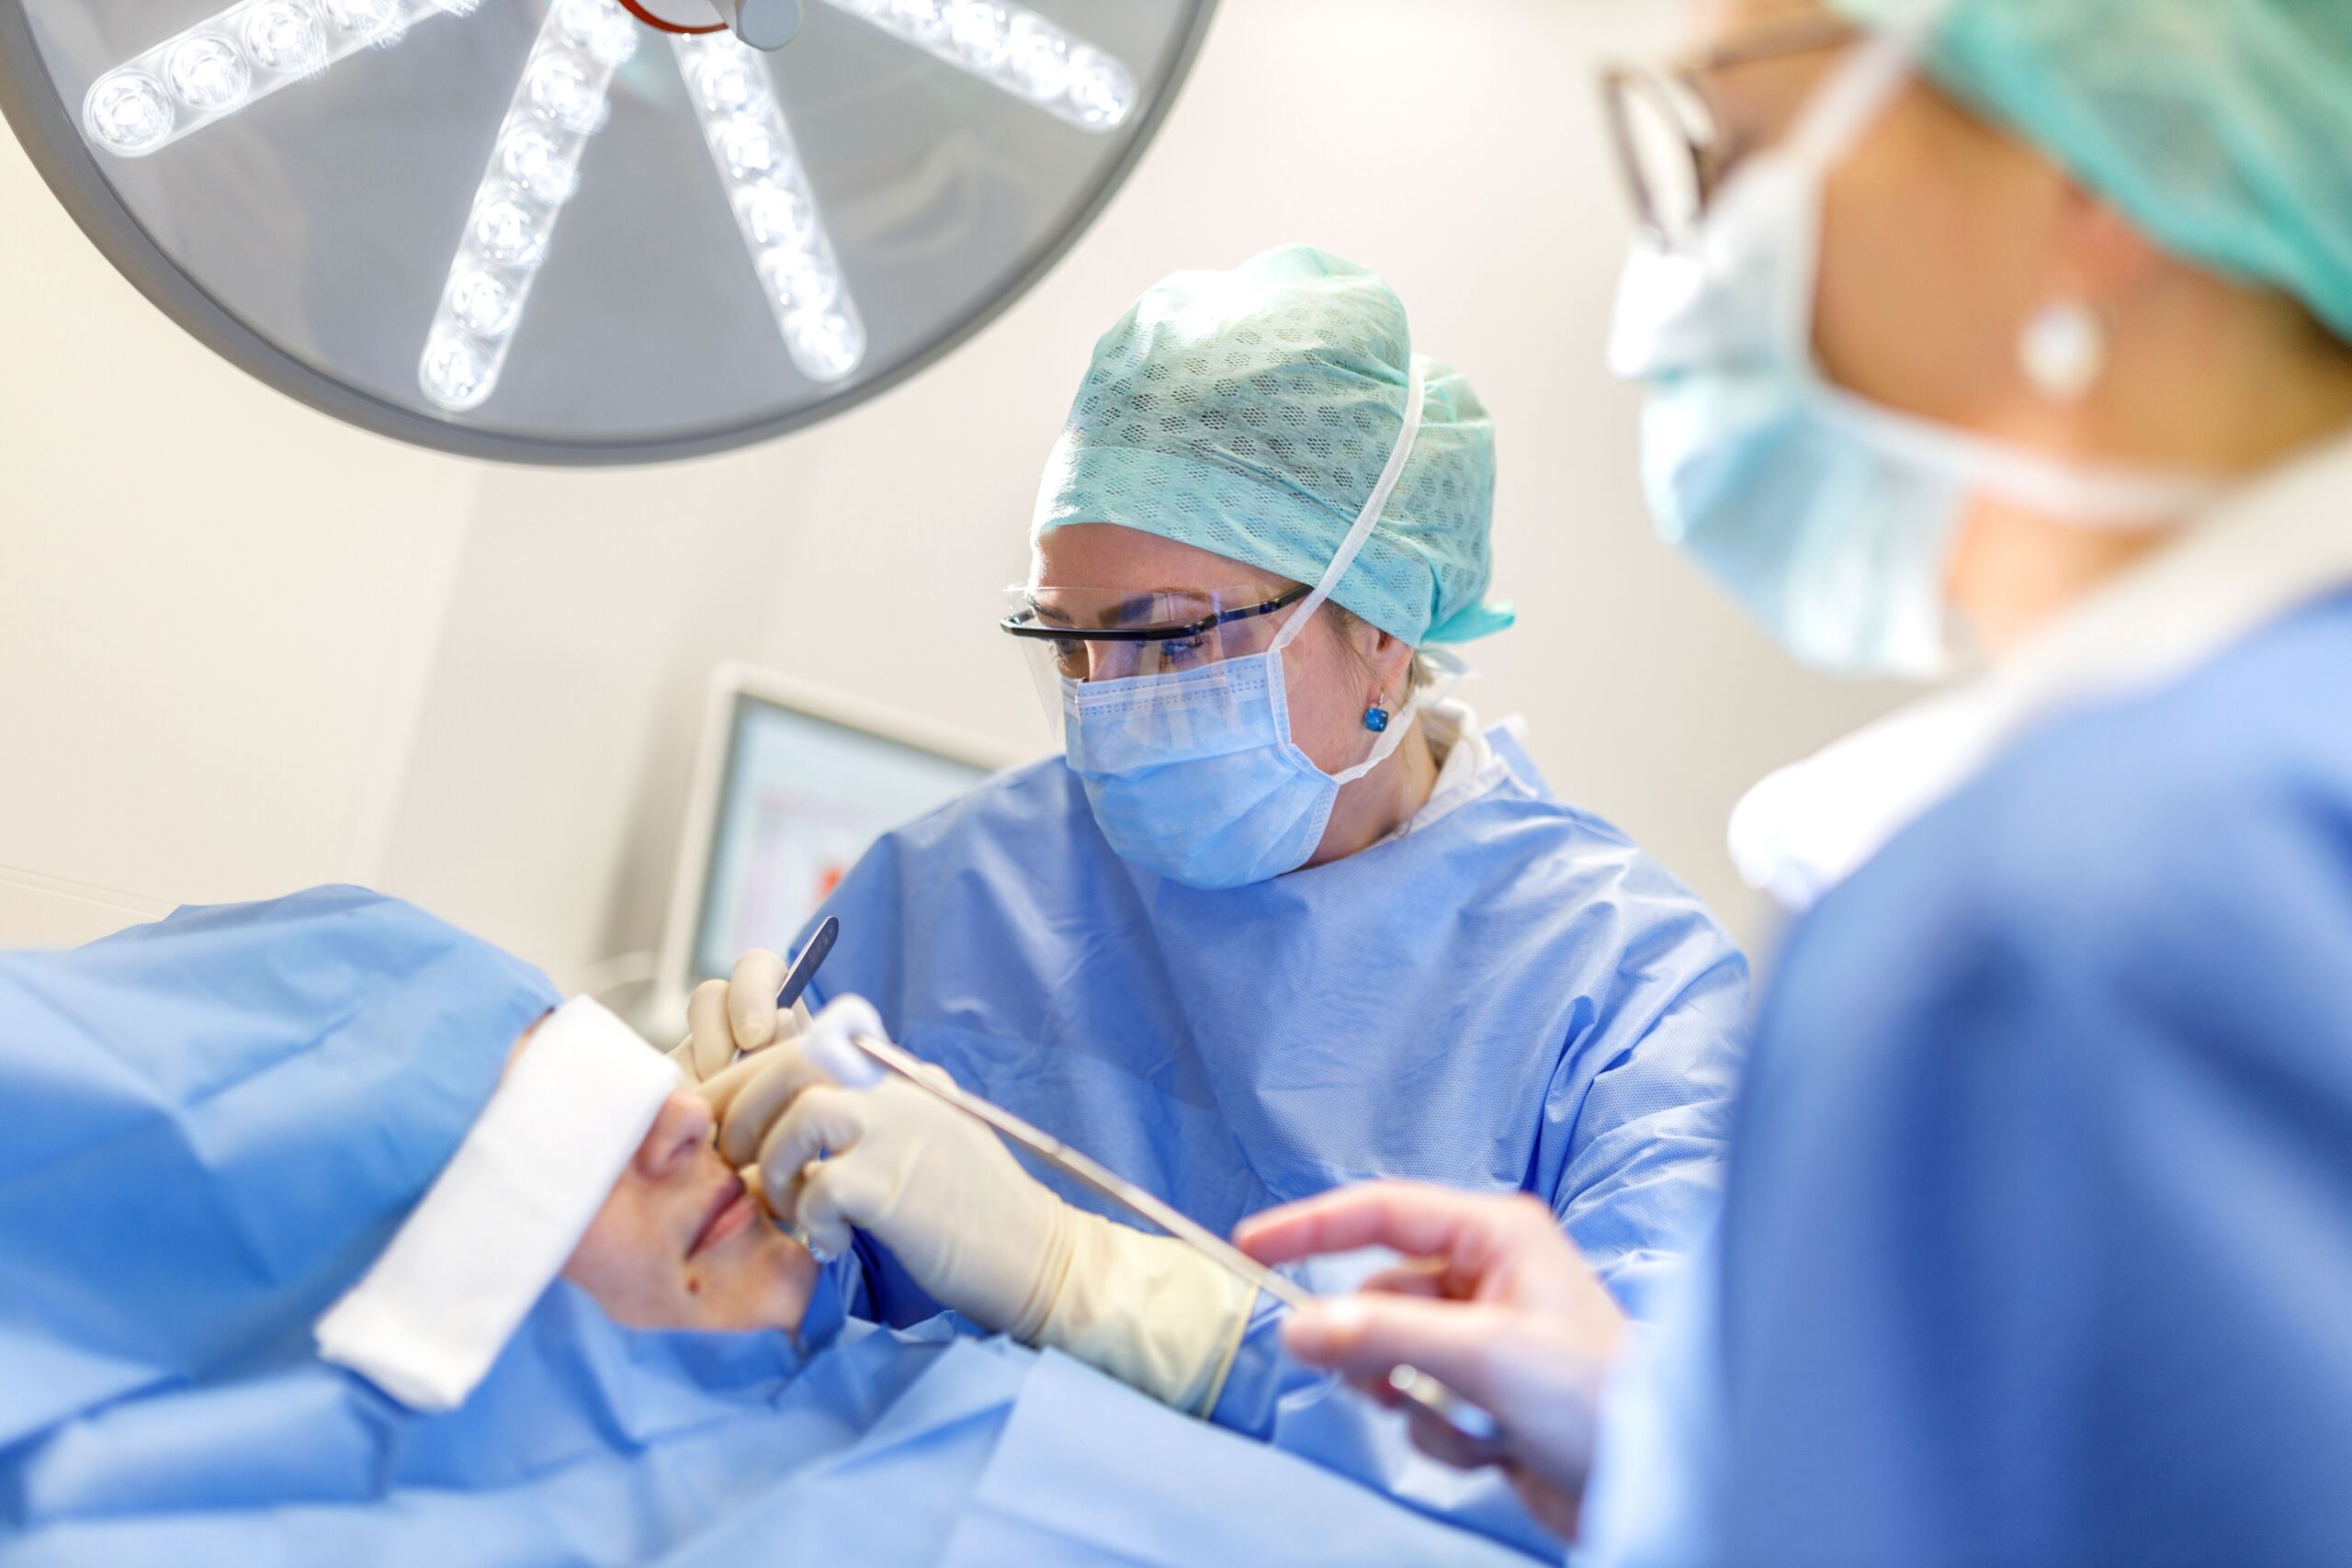 Zwei Chirurgen führen eine Nasenoperation an einem Patienten durch